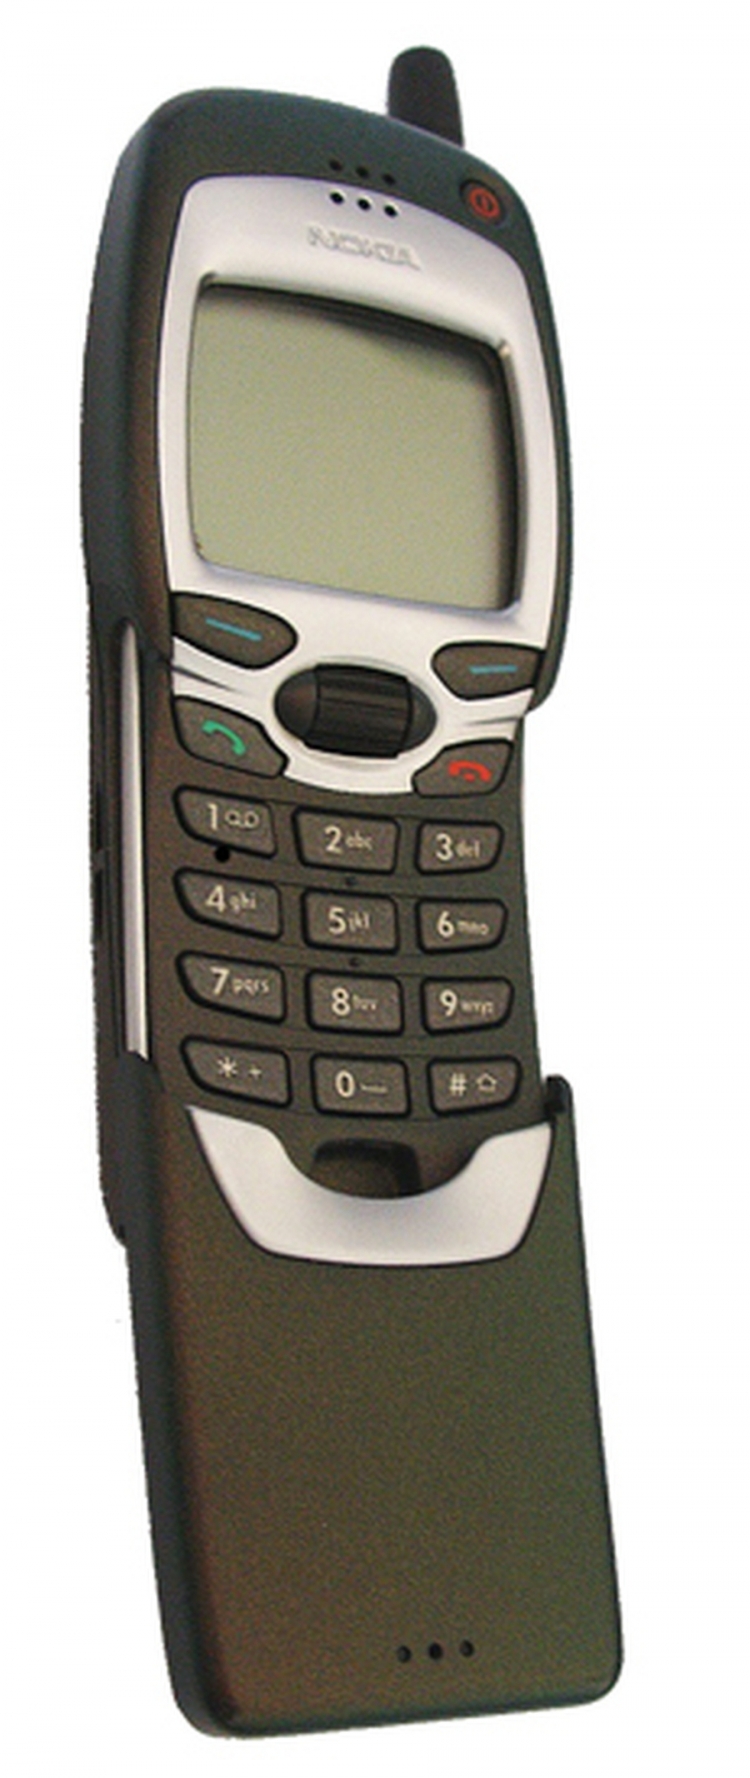 1999. godina - Nokia 7110 / Prvi mobilni telefon sa WAP preglednikom.